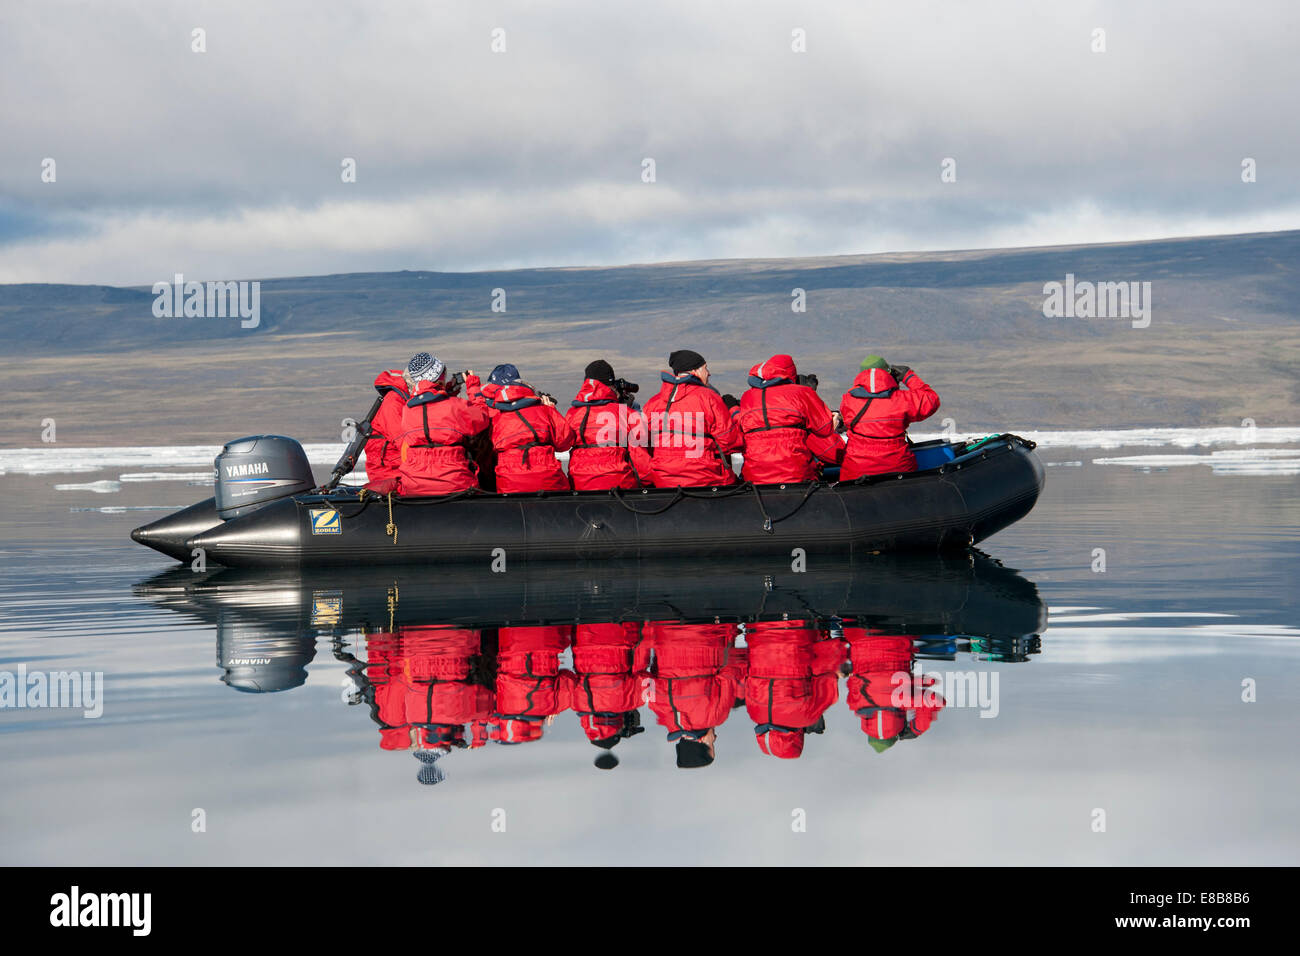 Zodia lleno de eco-turistas, con reflexión, de la isla de Baffin, Canadá, el Océano Ártico. Foto de stock